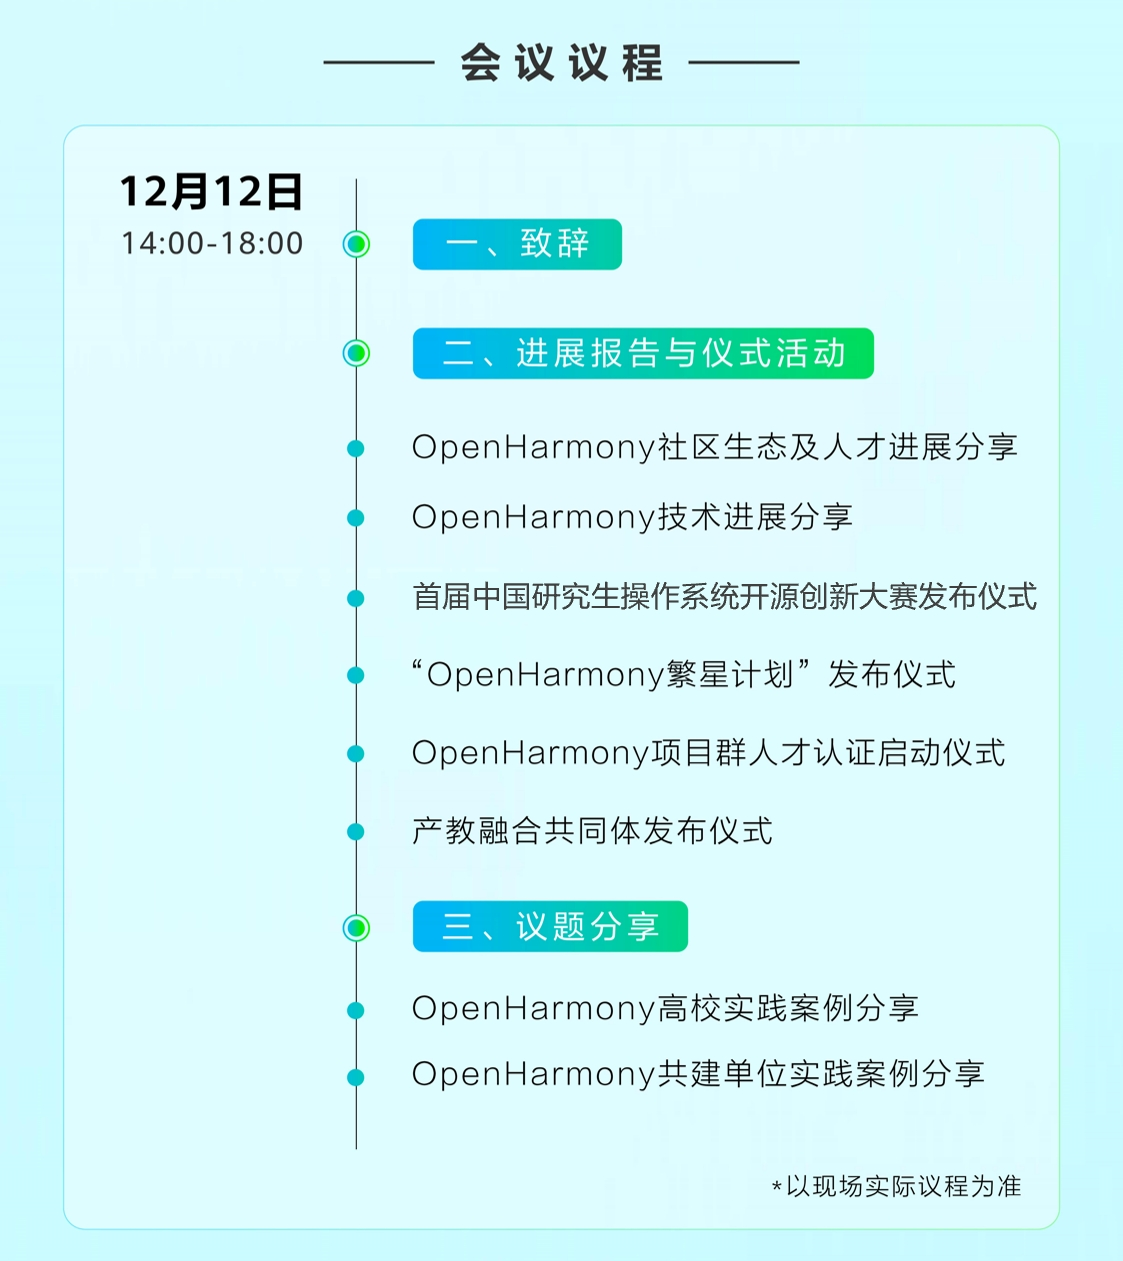 繁荣生态，人才先行︱首届OpenHarmony人才生态大会即将在上海召开-鸿蒙开发者社区